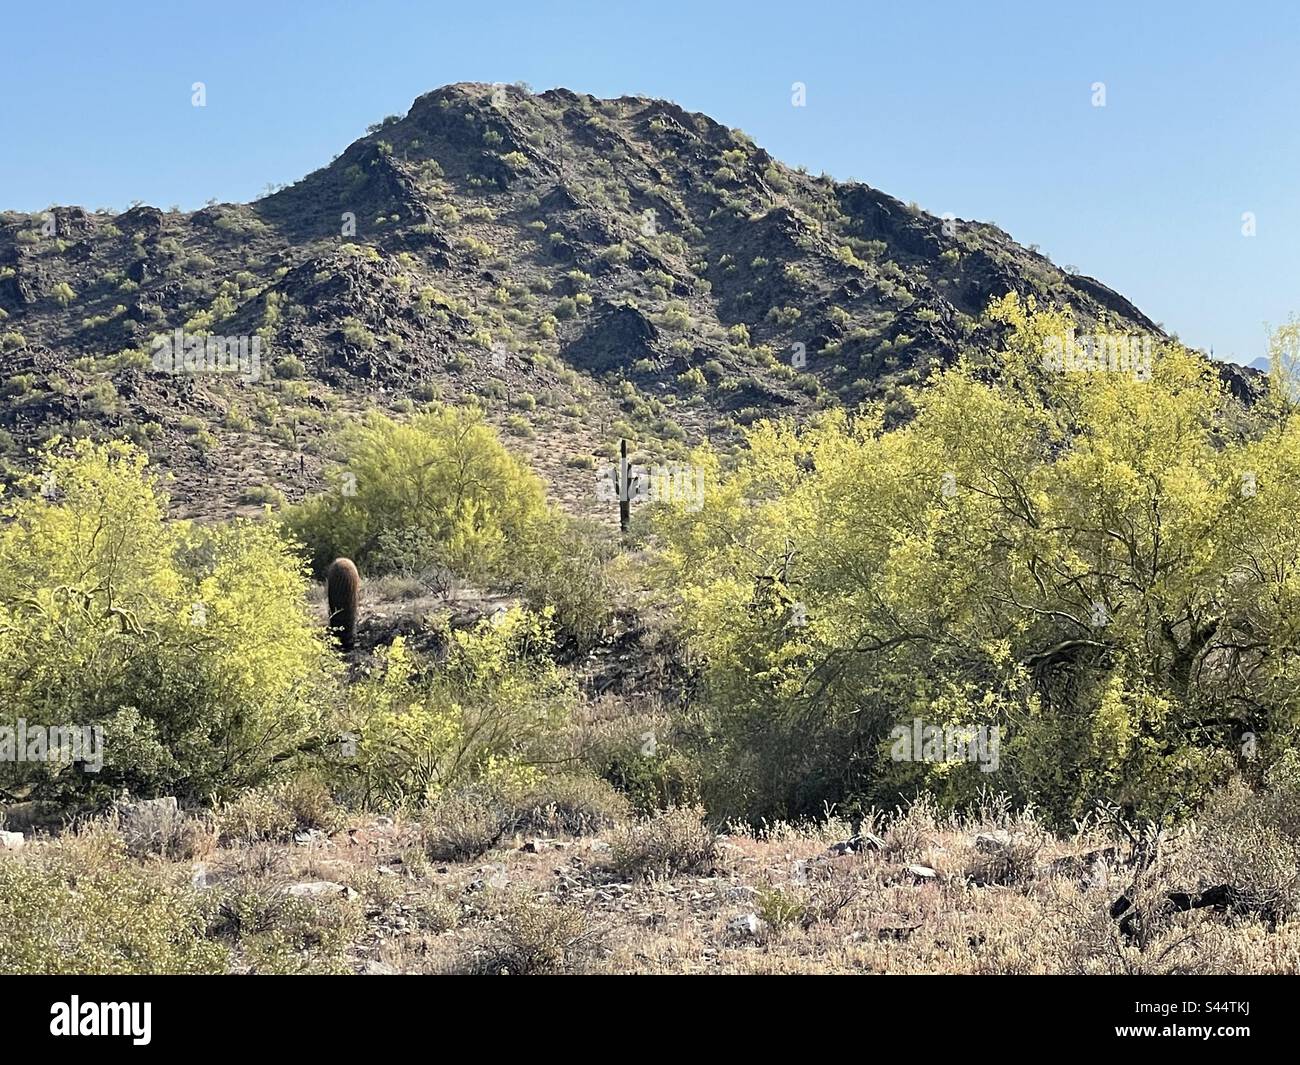 Tôt le matin, ciel bleu brillant, cactus géant de saguaro, dessin de rêve avec des arbres de Palo Verde couverts de fleurs jaunes, désert de Sonoran, réserve de montagnes de Phoenix, Arizona Banque D'Images